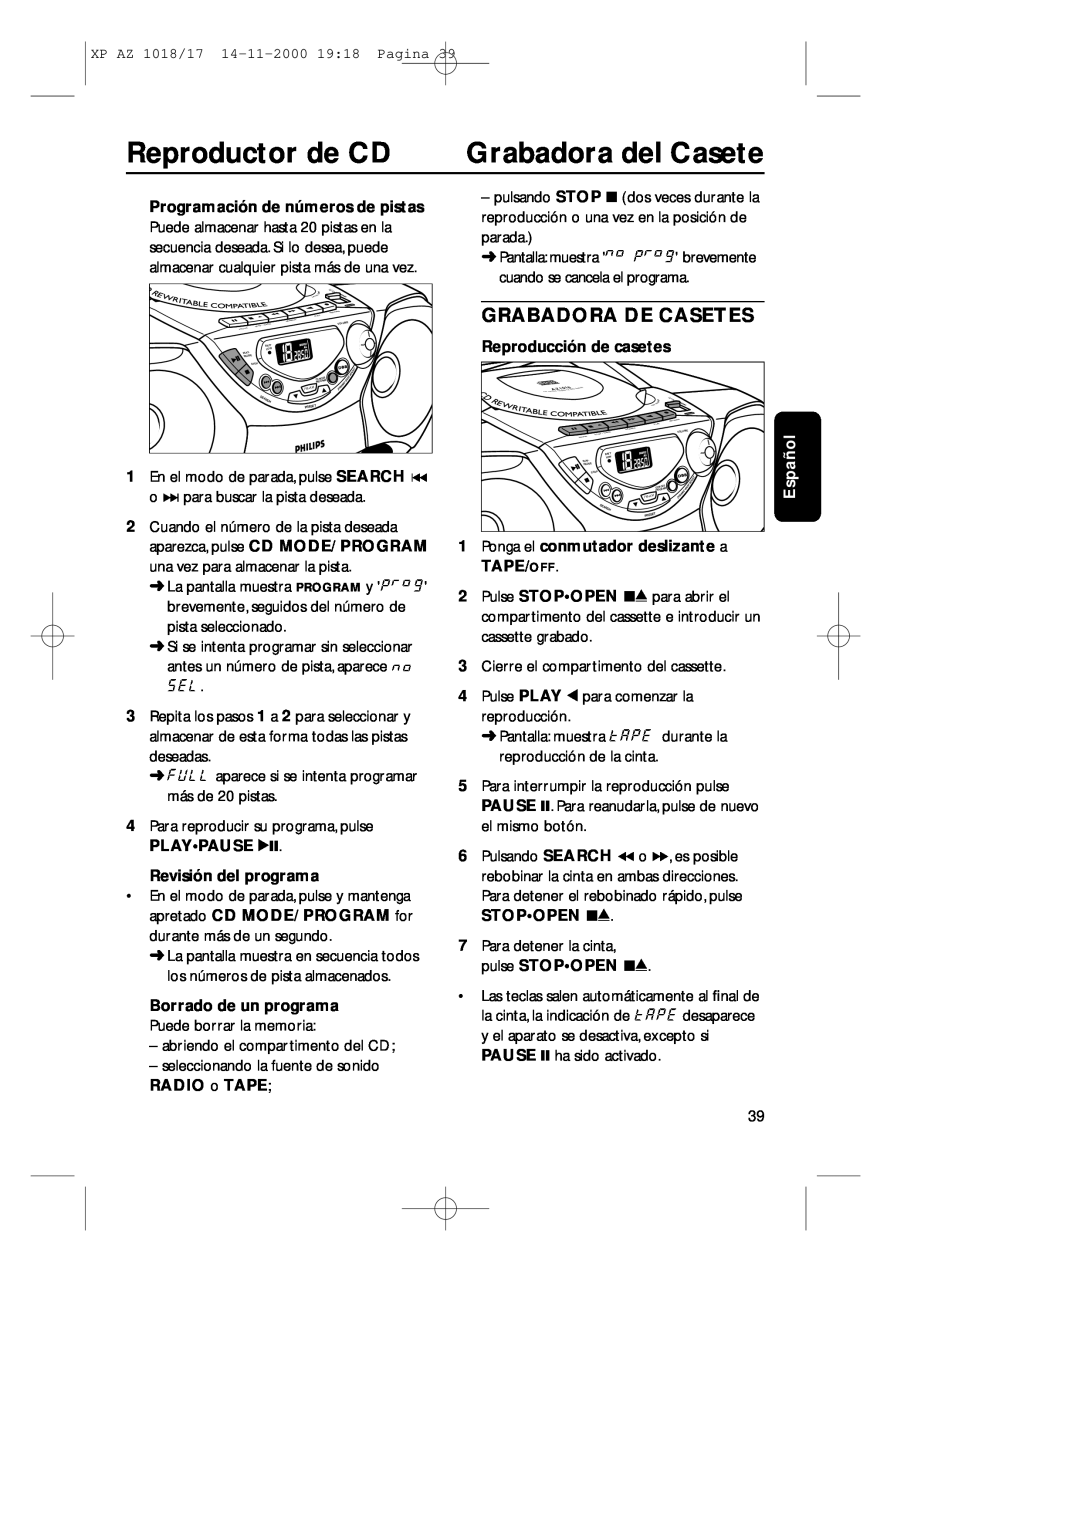 Philips 1018 manual Grabadora del Casete, Grabadora De Casetes, Reproductor de CD, Programación de números de pistas, Espa 